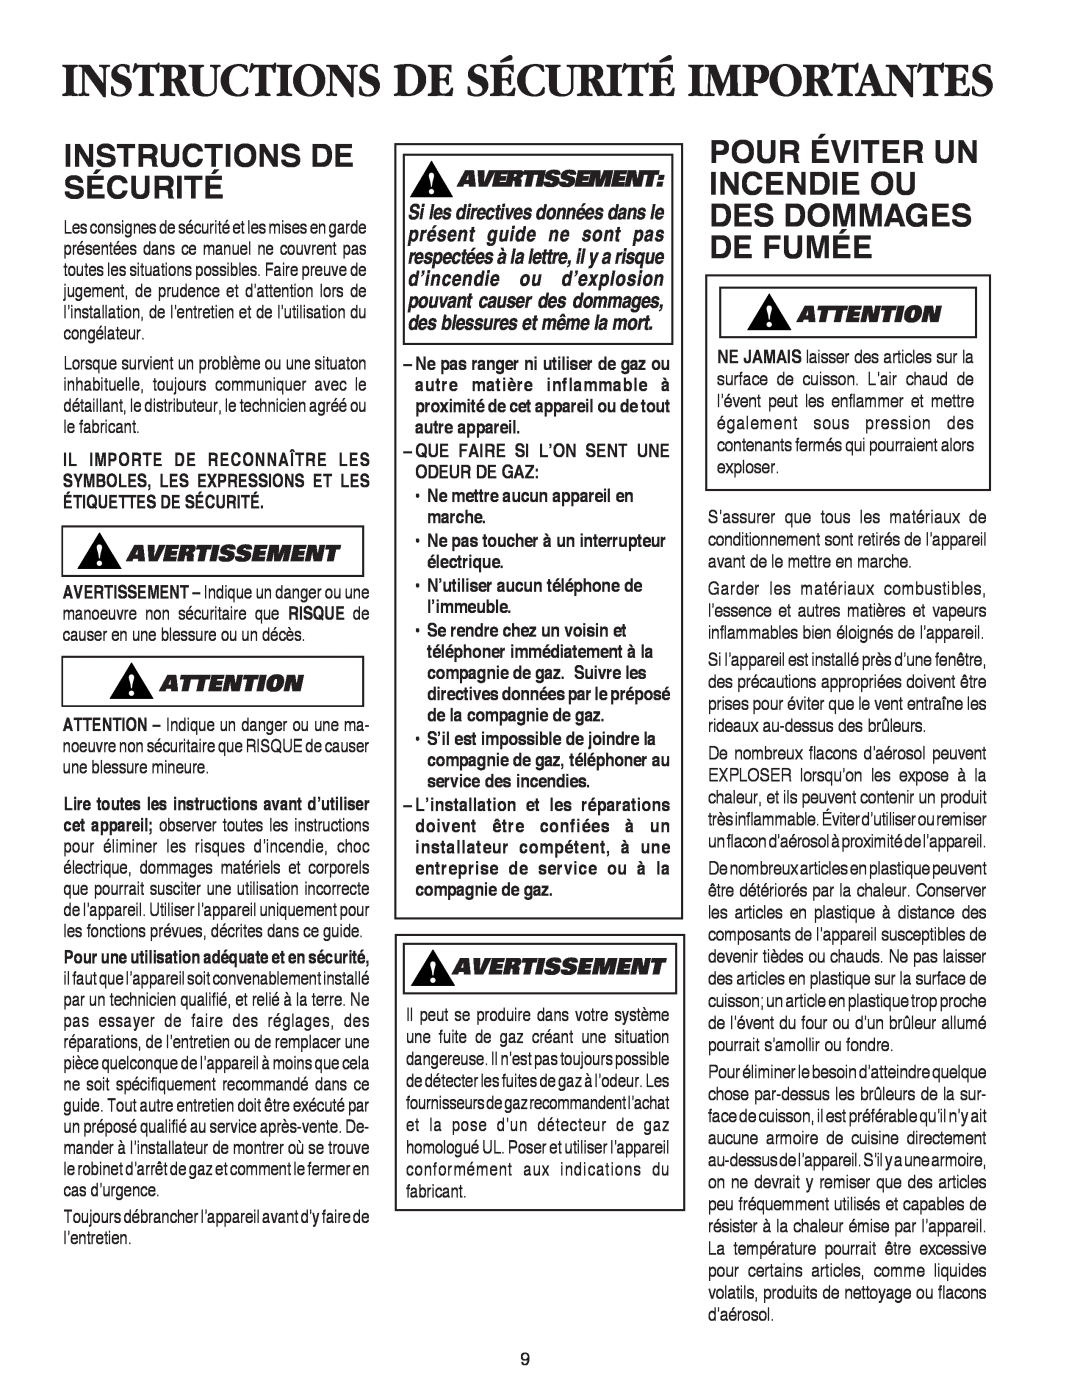 Maytag AKS3040 Instructions De Sécurité, Pour Éviter Un Incendie Ou Des Dommages De Fumée, Avertissement 